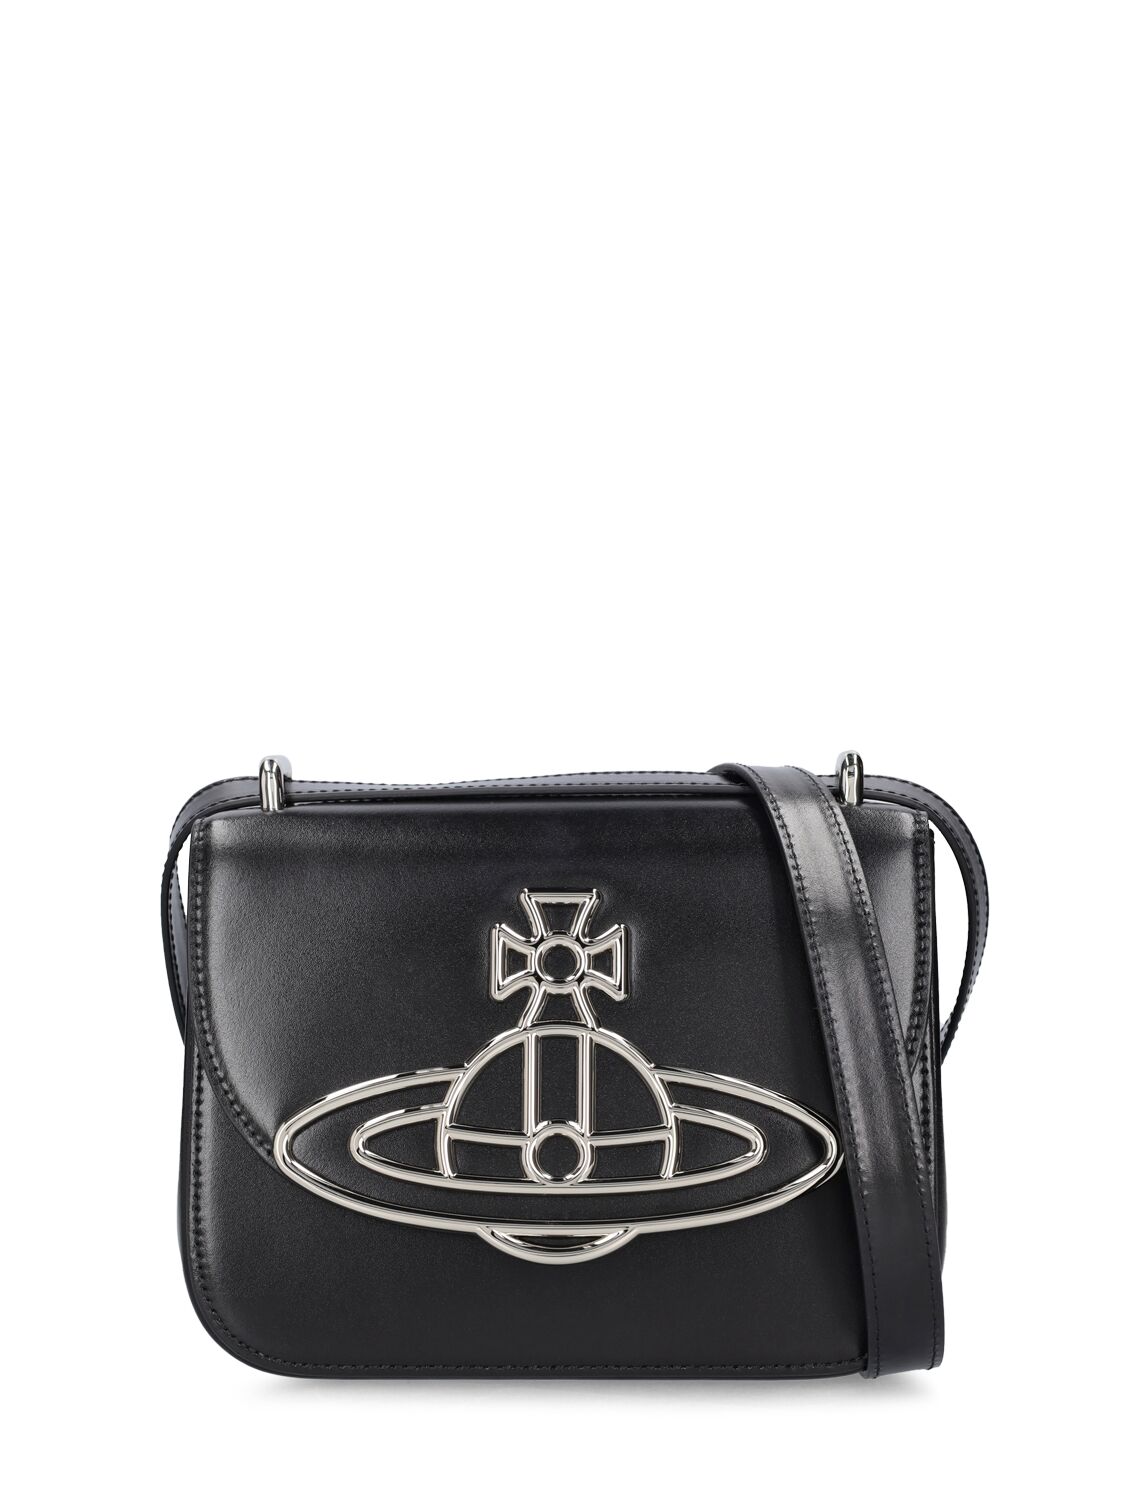 Vivienne Westwood Linda Silky Leather Shoulder Bag In Black